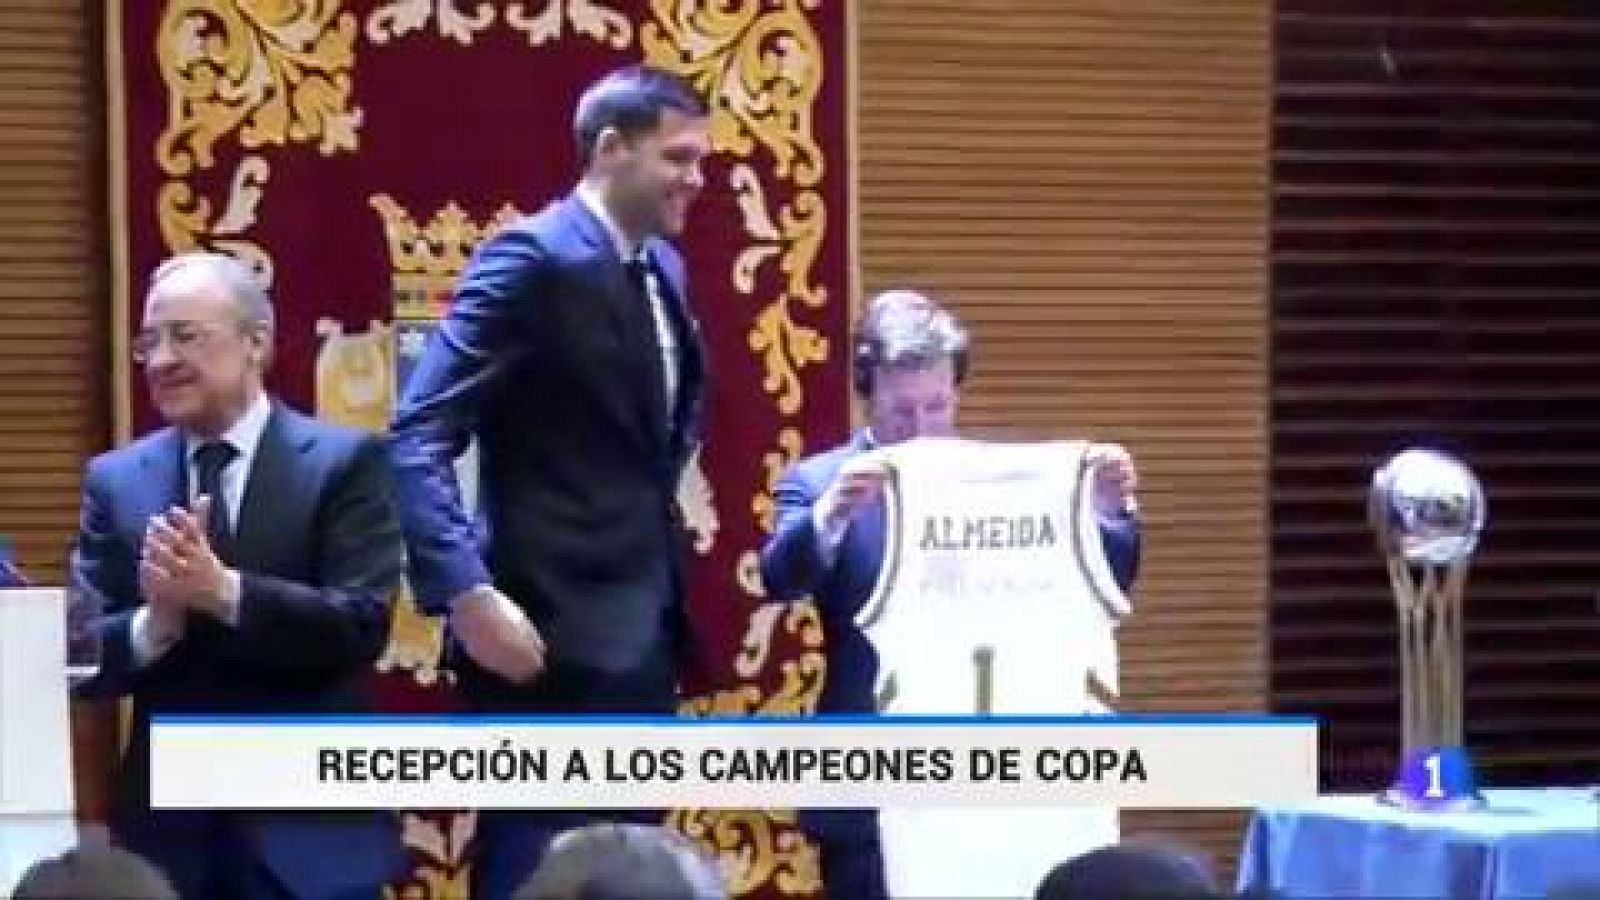 Baloncesto - Almeida y Ayuso reciben a los campeones de Copa - RTVE.es